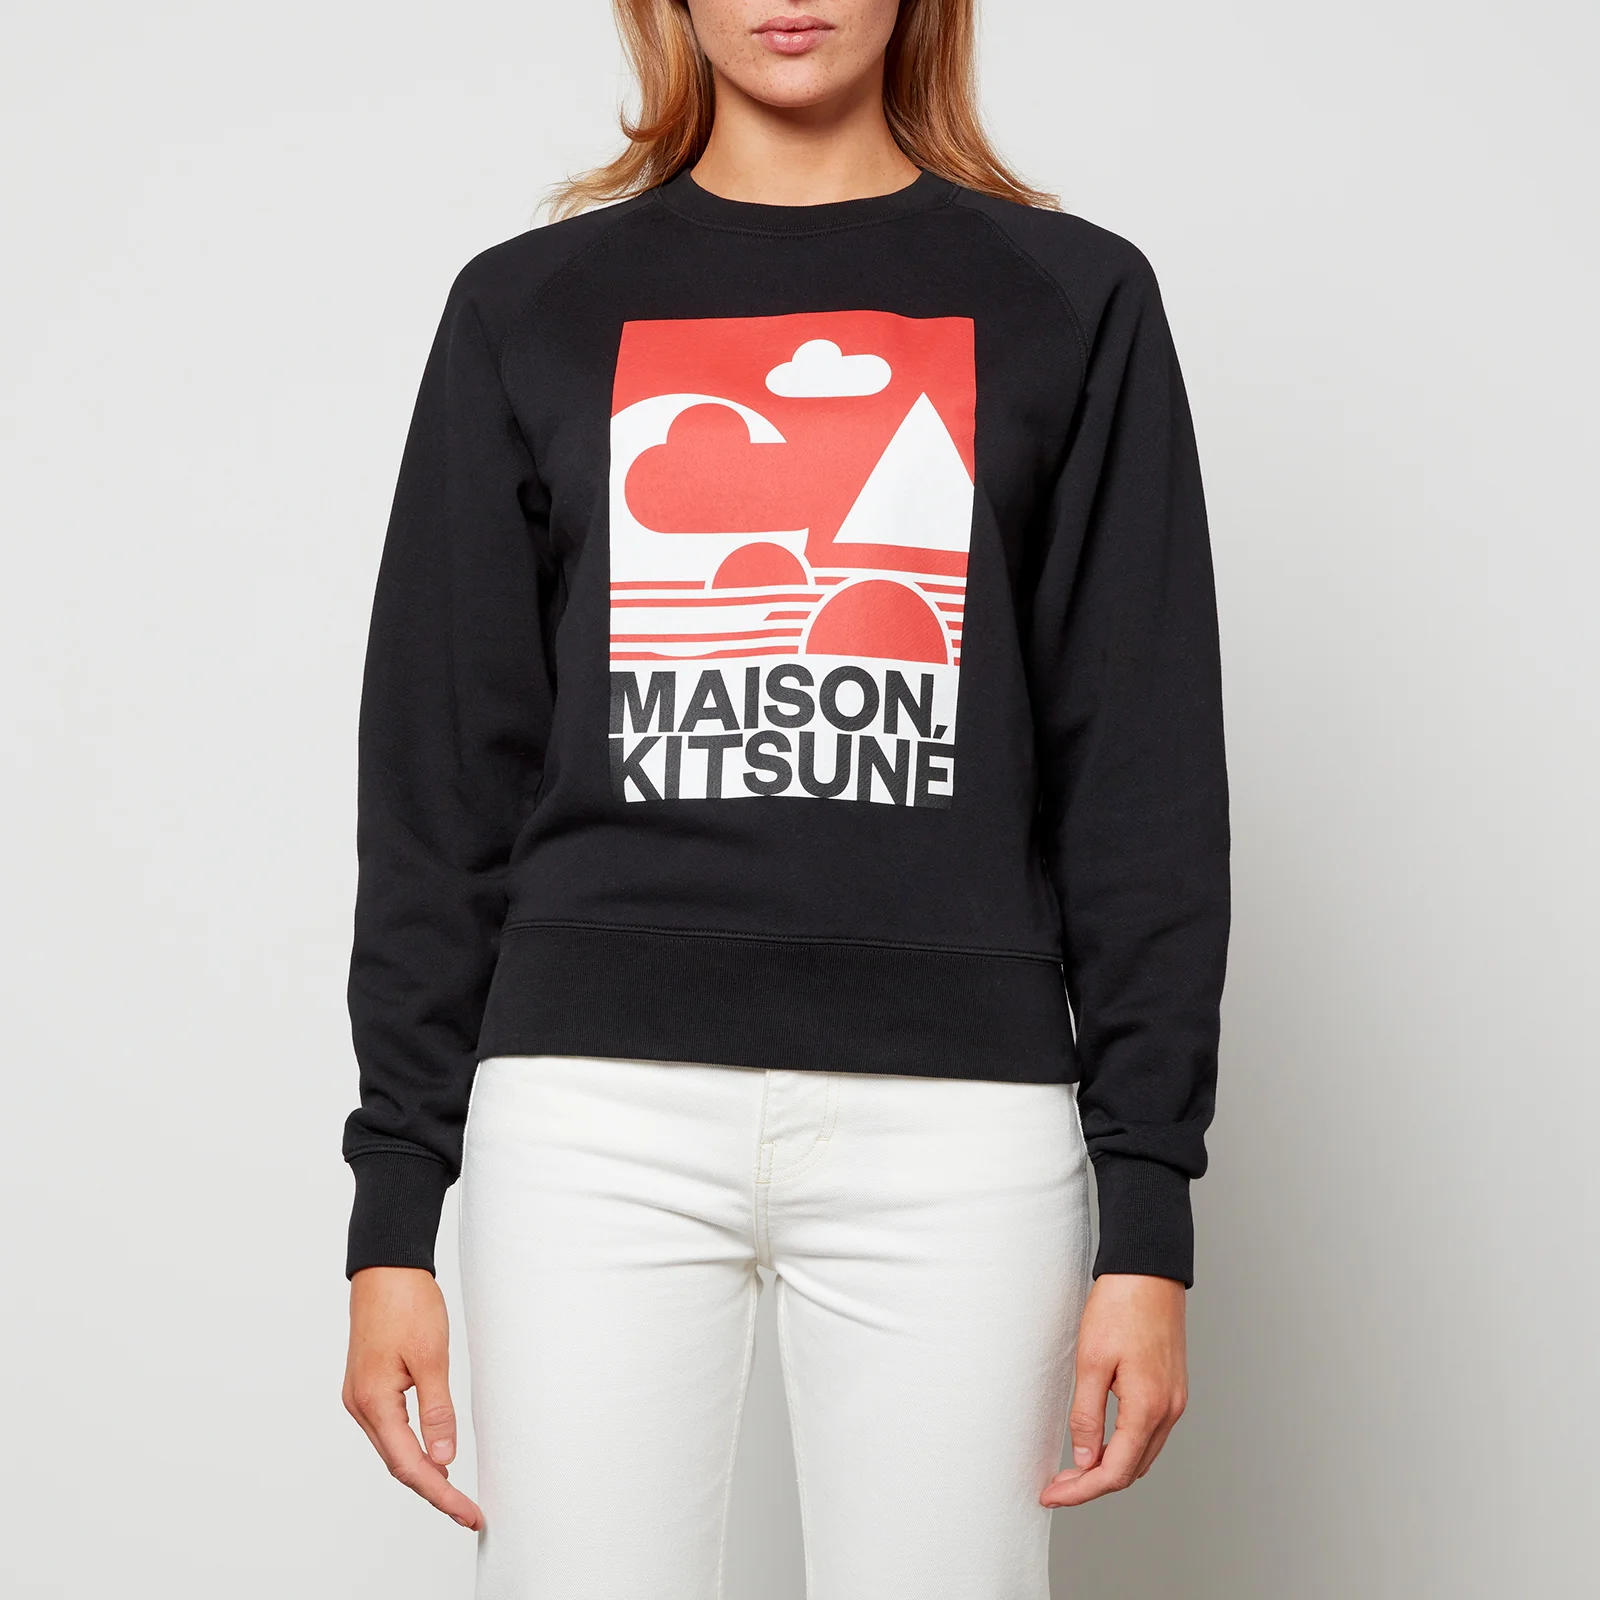 Maison Kitsuné Women's Red Anthony Burrill Adjusted Sweatshirt - Black Image 1